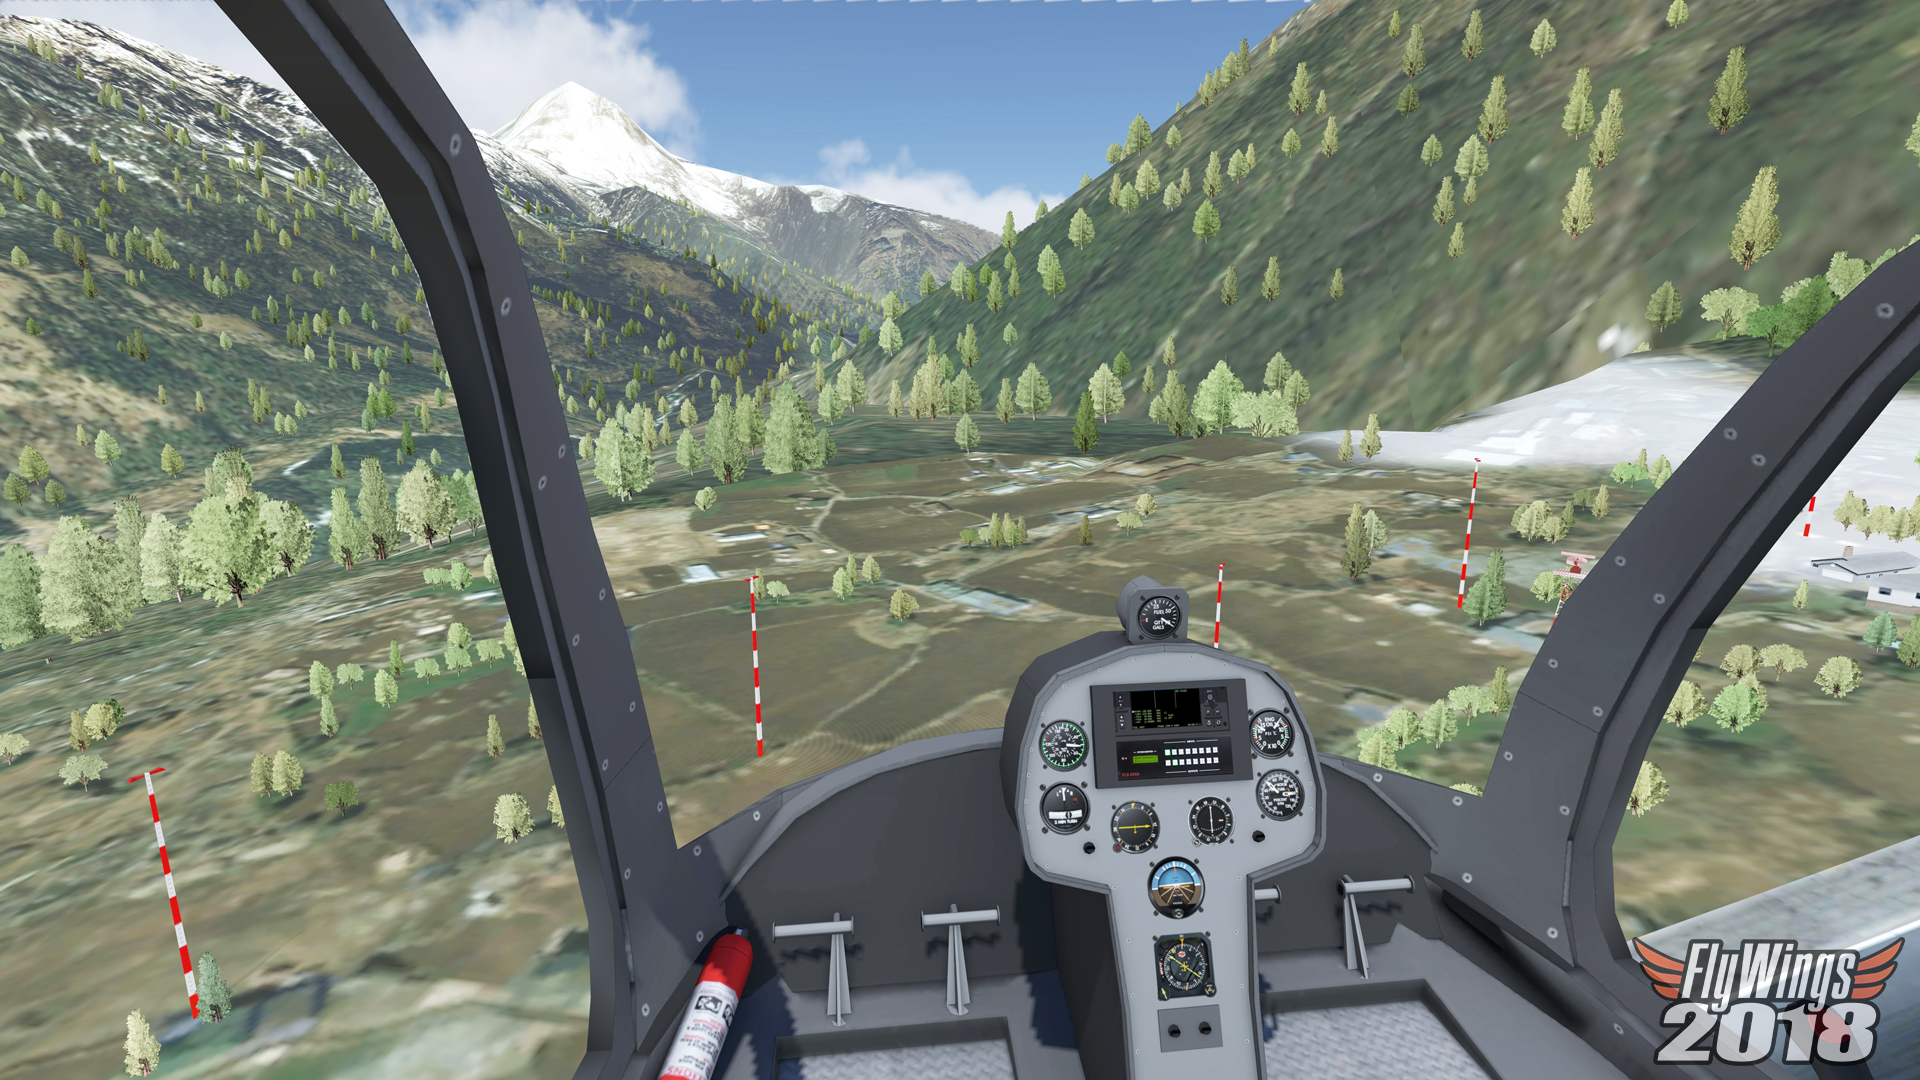 flight simulator 2018 flywings free pc